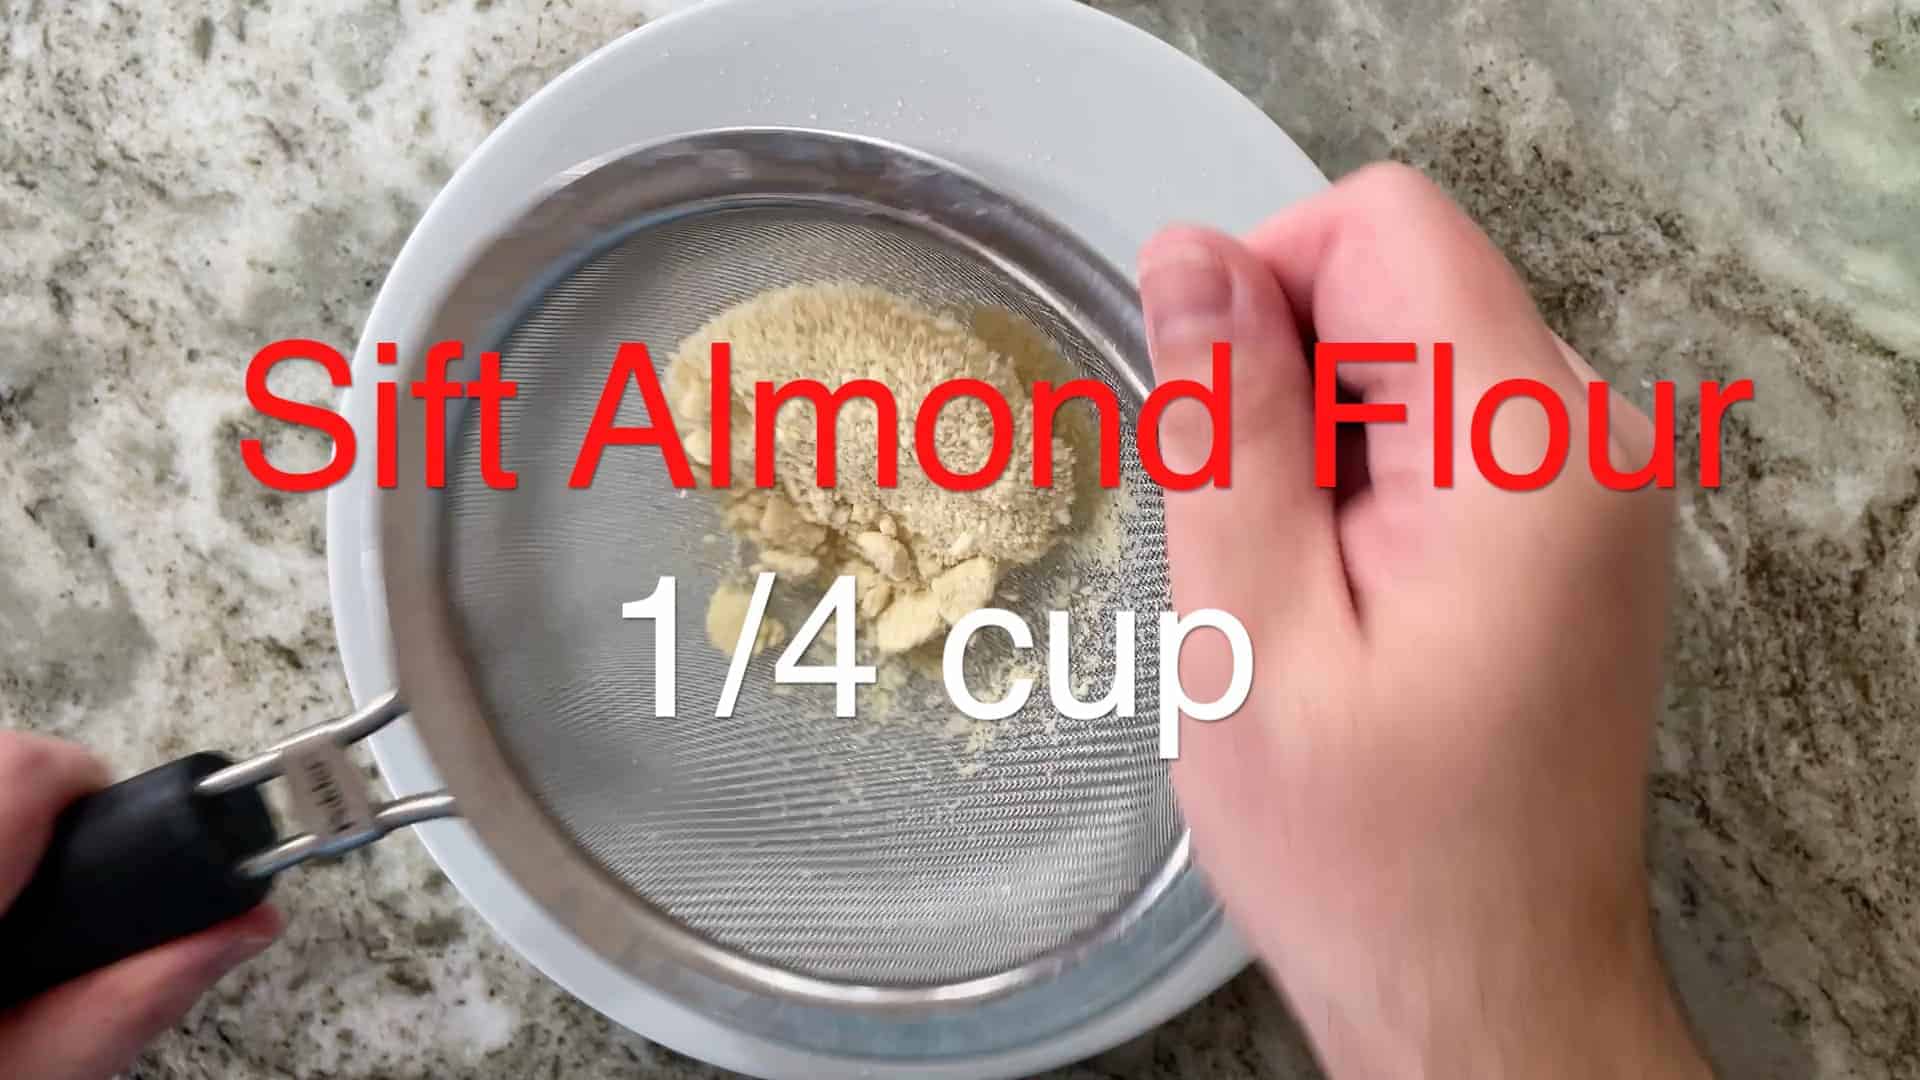 Sift Almond Flour